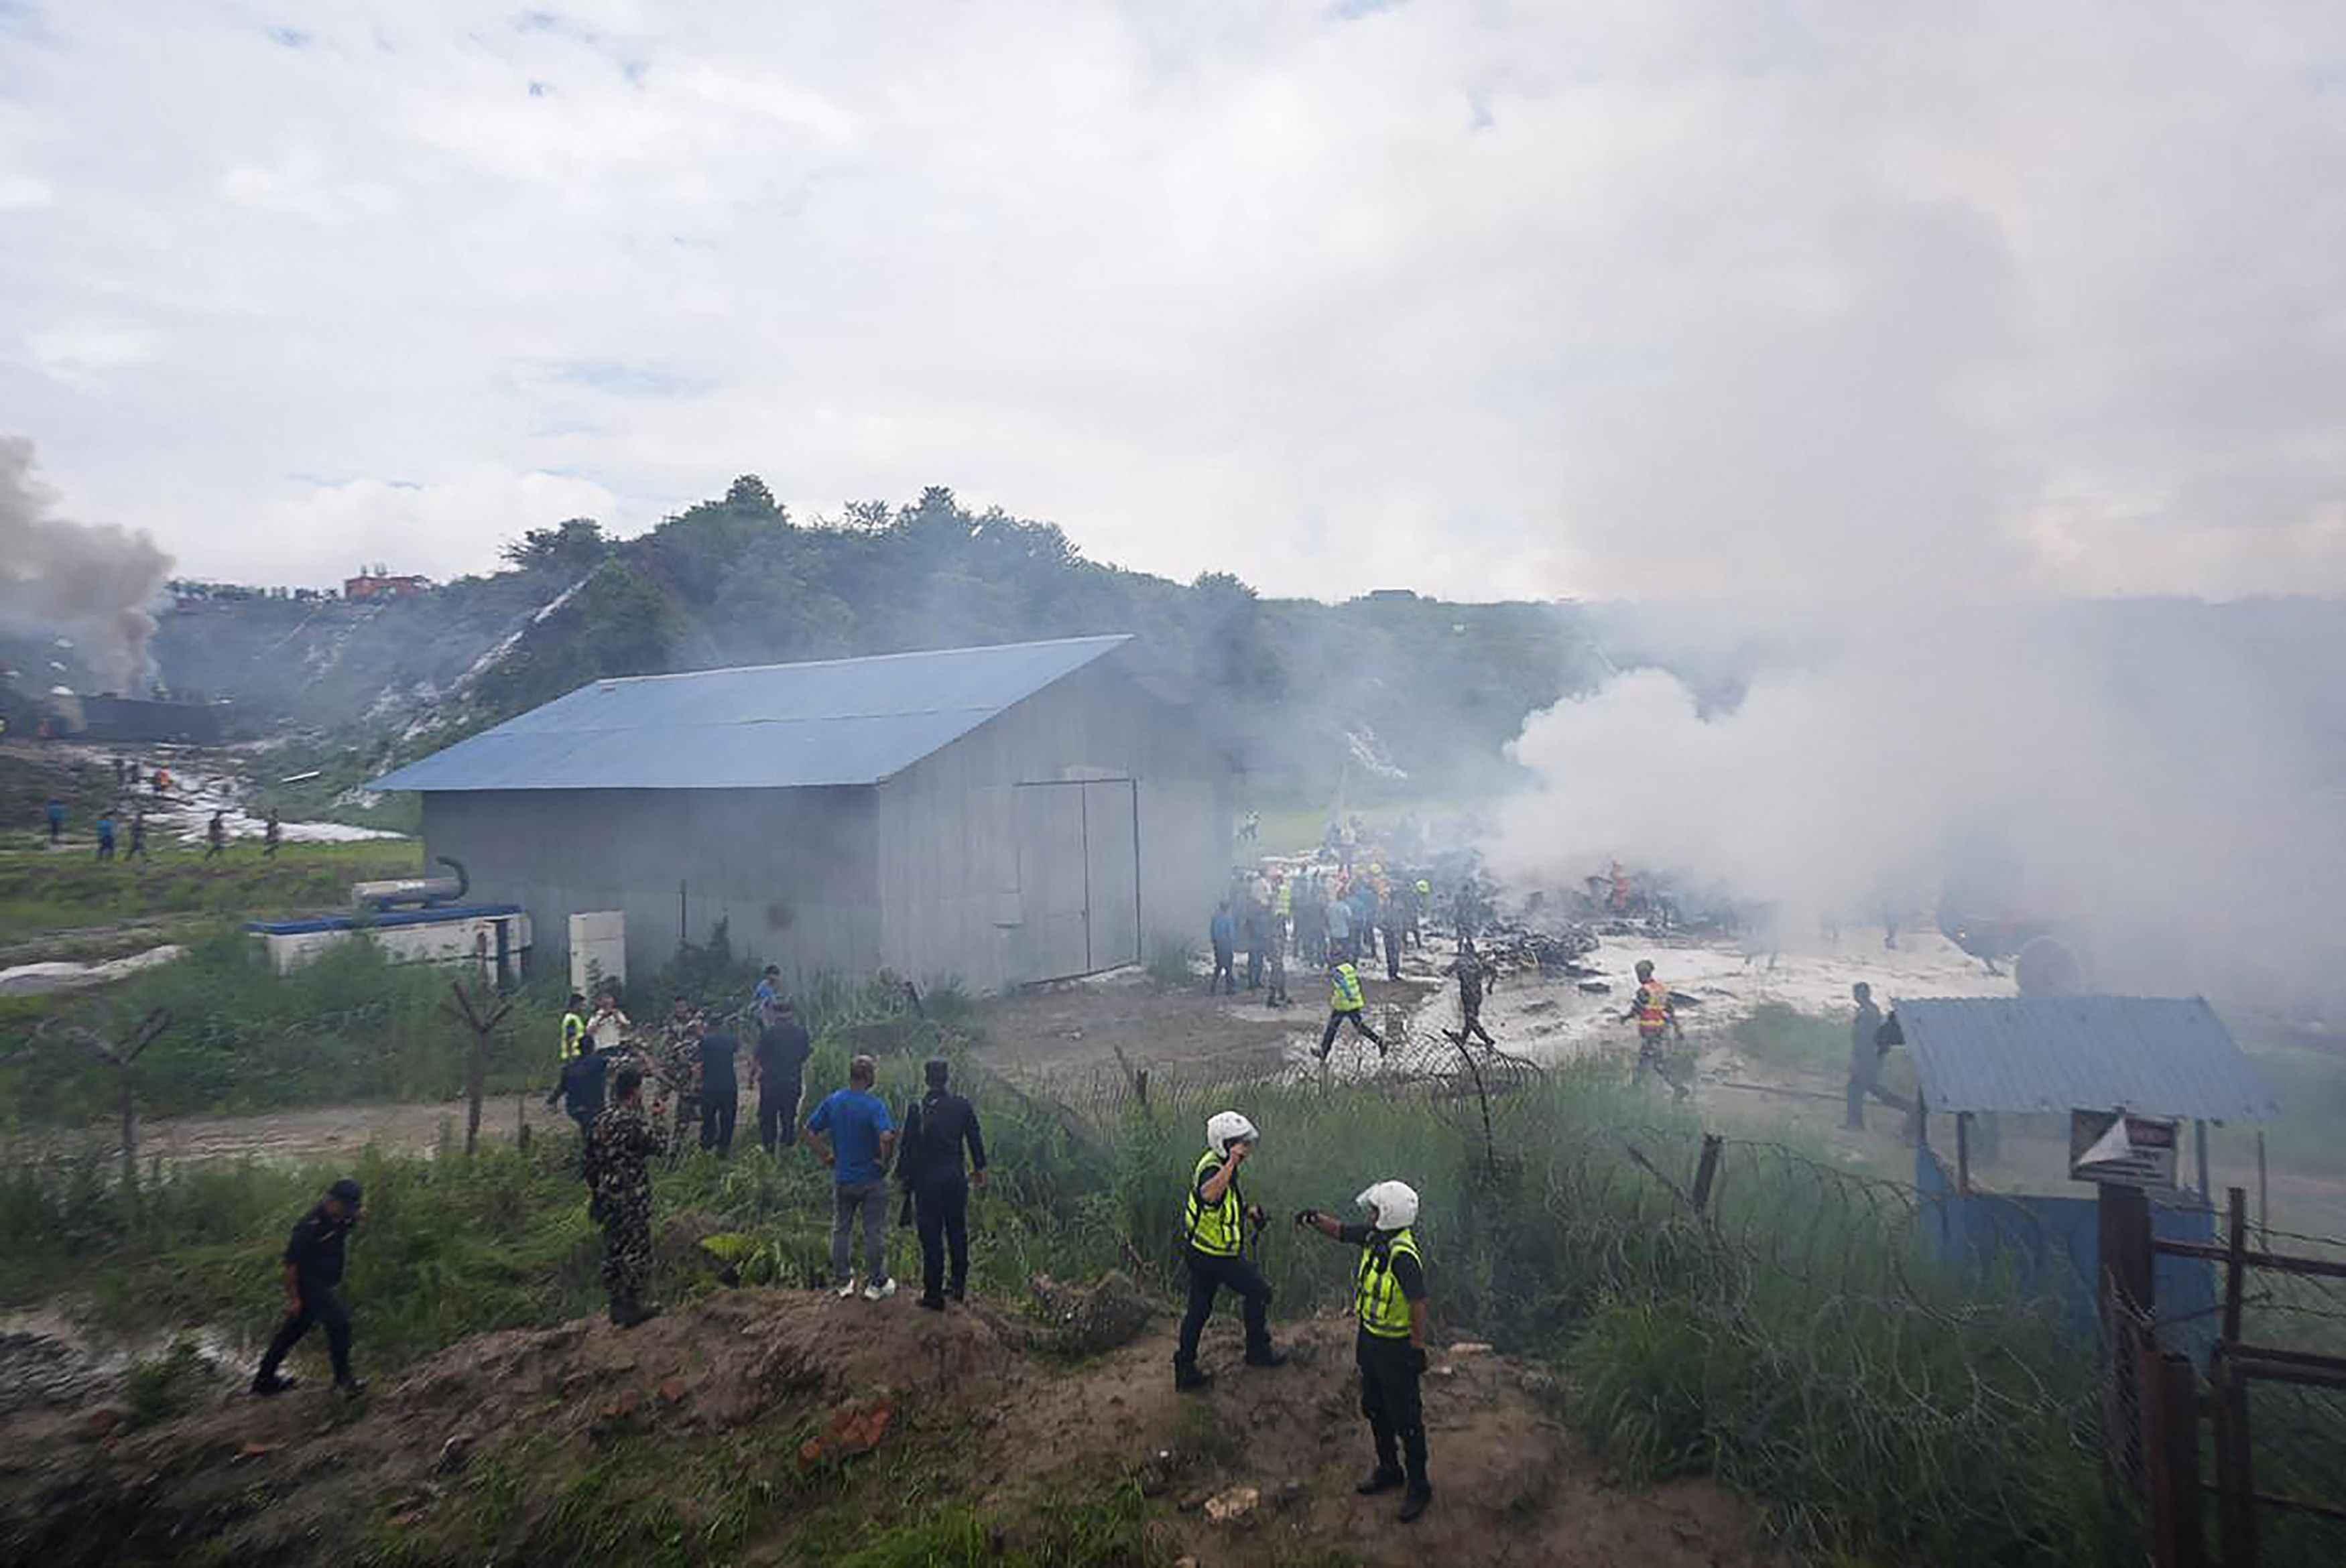 Nepal'de uçak kazası! Kalkıştan kısa süre sonra düştü:18 ölü, 1 yaralı...